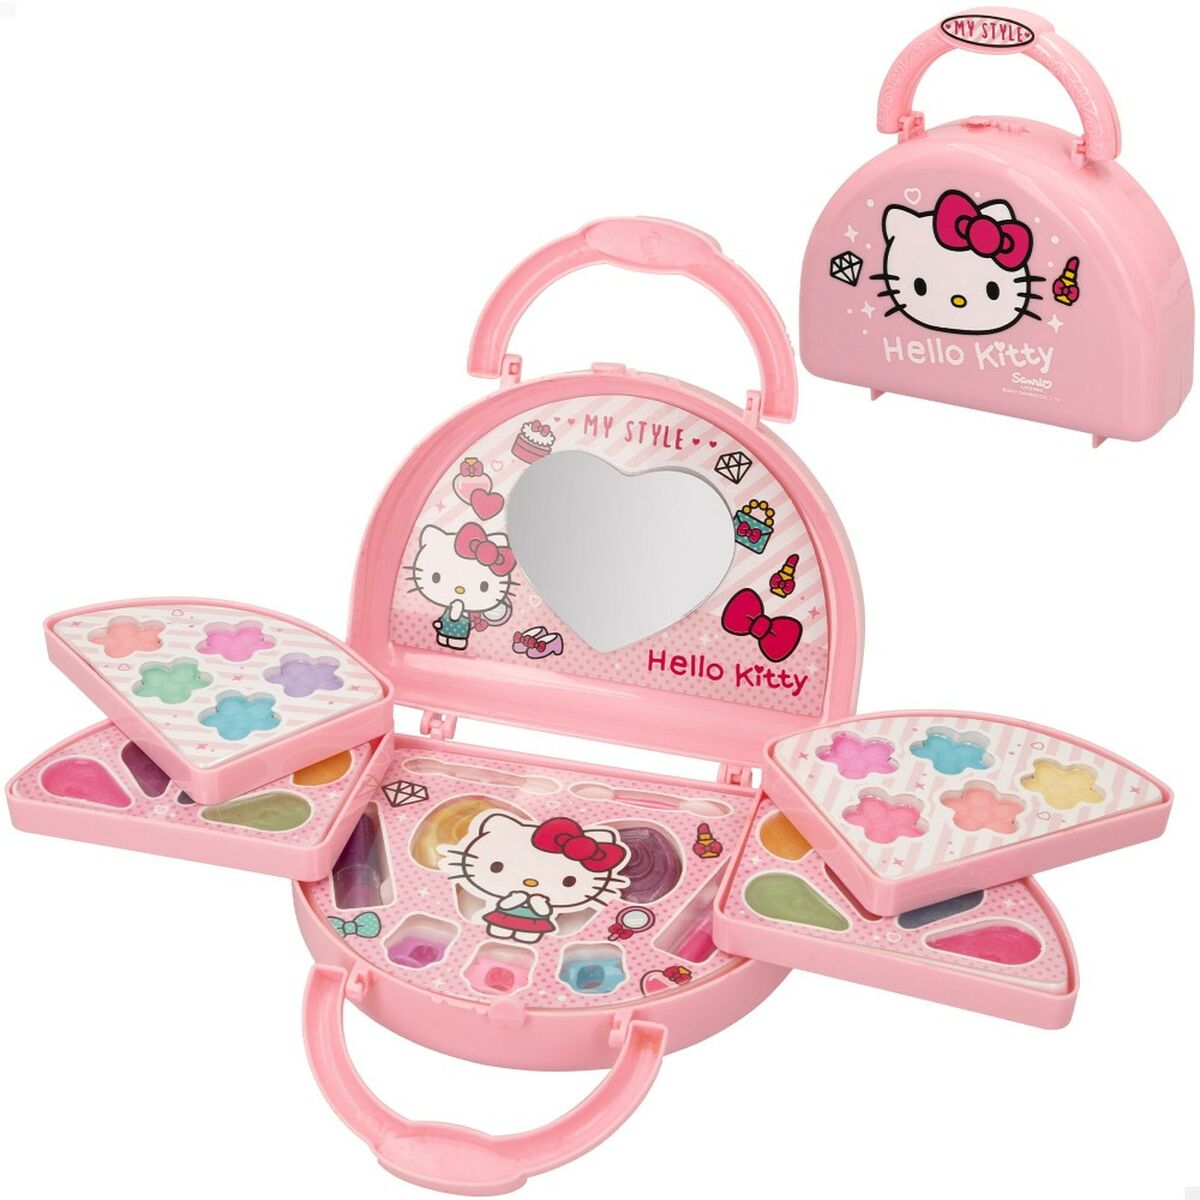 Children's Make-up Set Hello Kitty 15 x 11,5 x 5,5 cm 6 Units